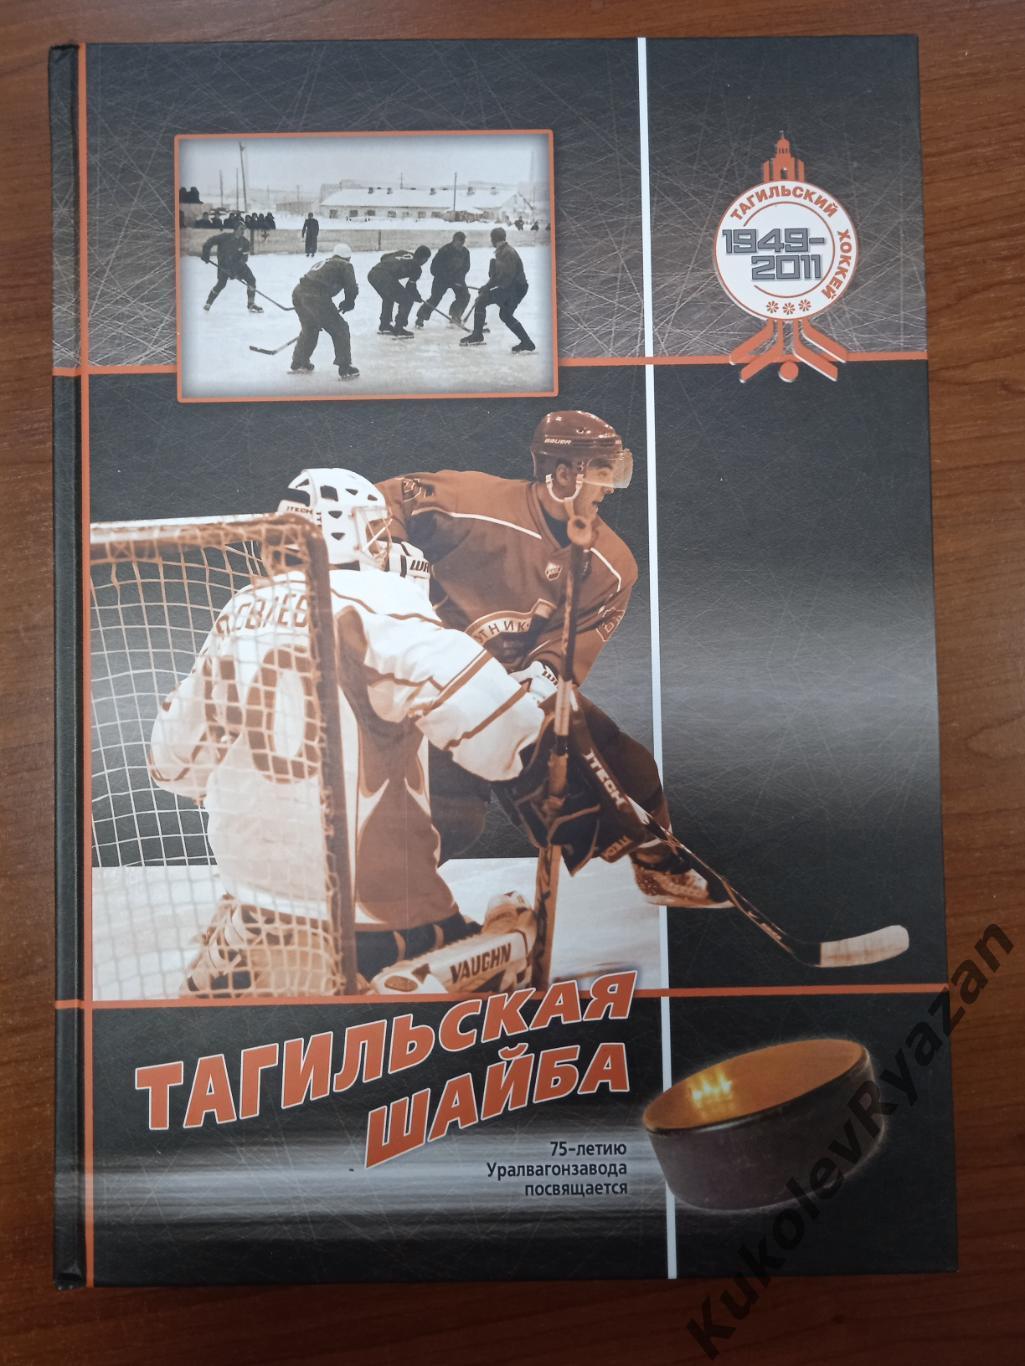 Исаак Скобло Тагильская шайба Книга по истории хоккея Нижнего Тагила 2011